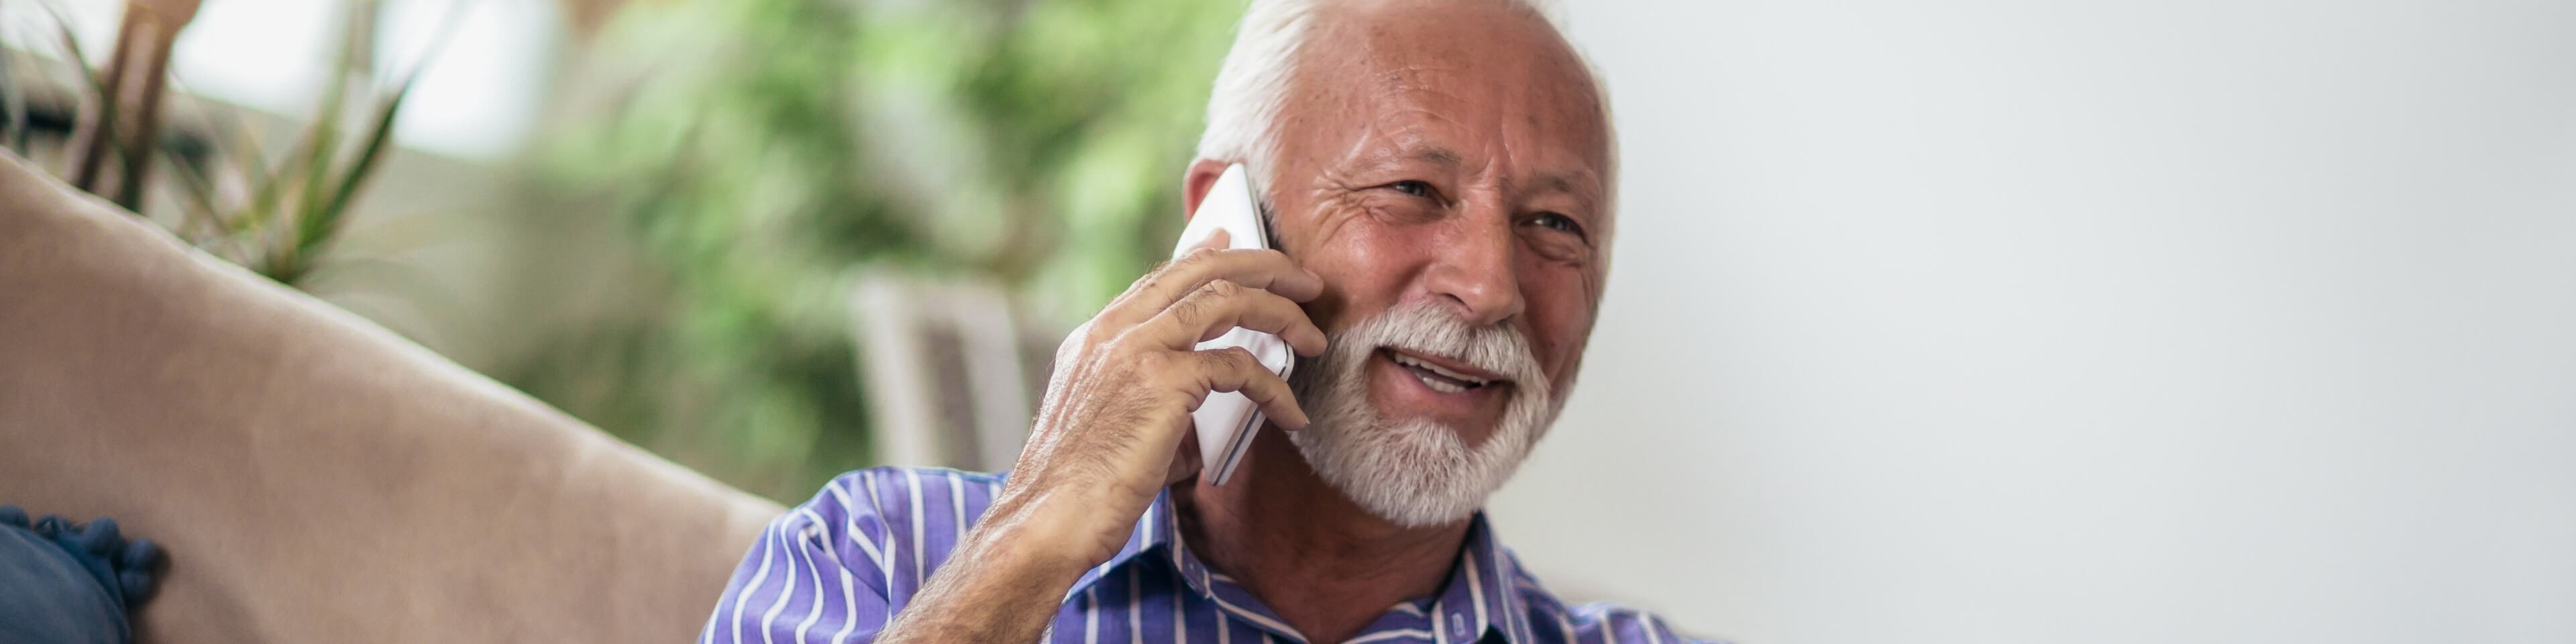 Older man using phone